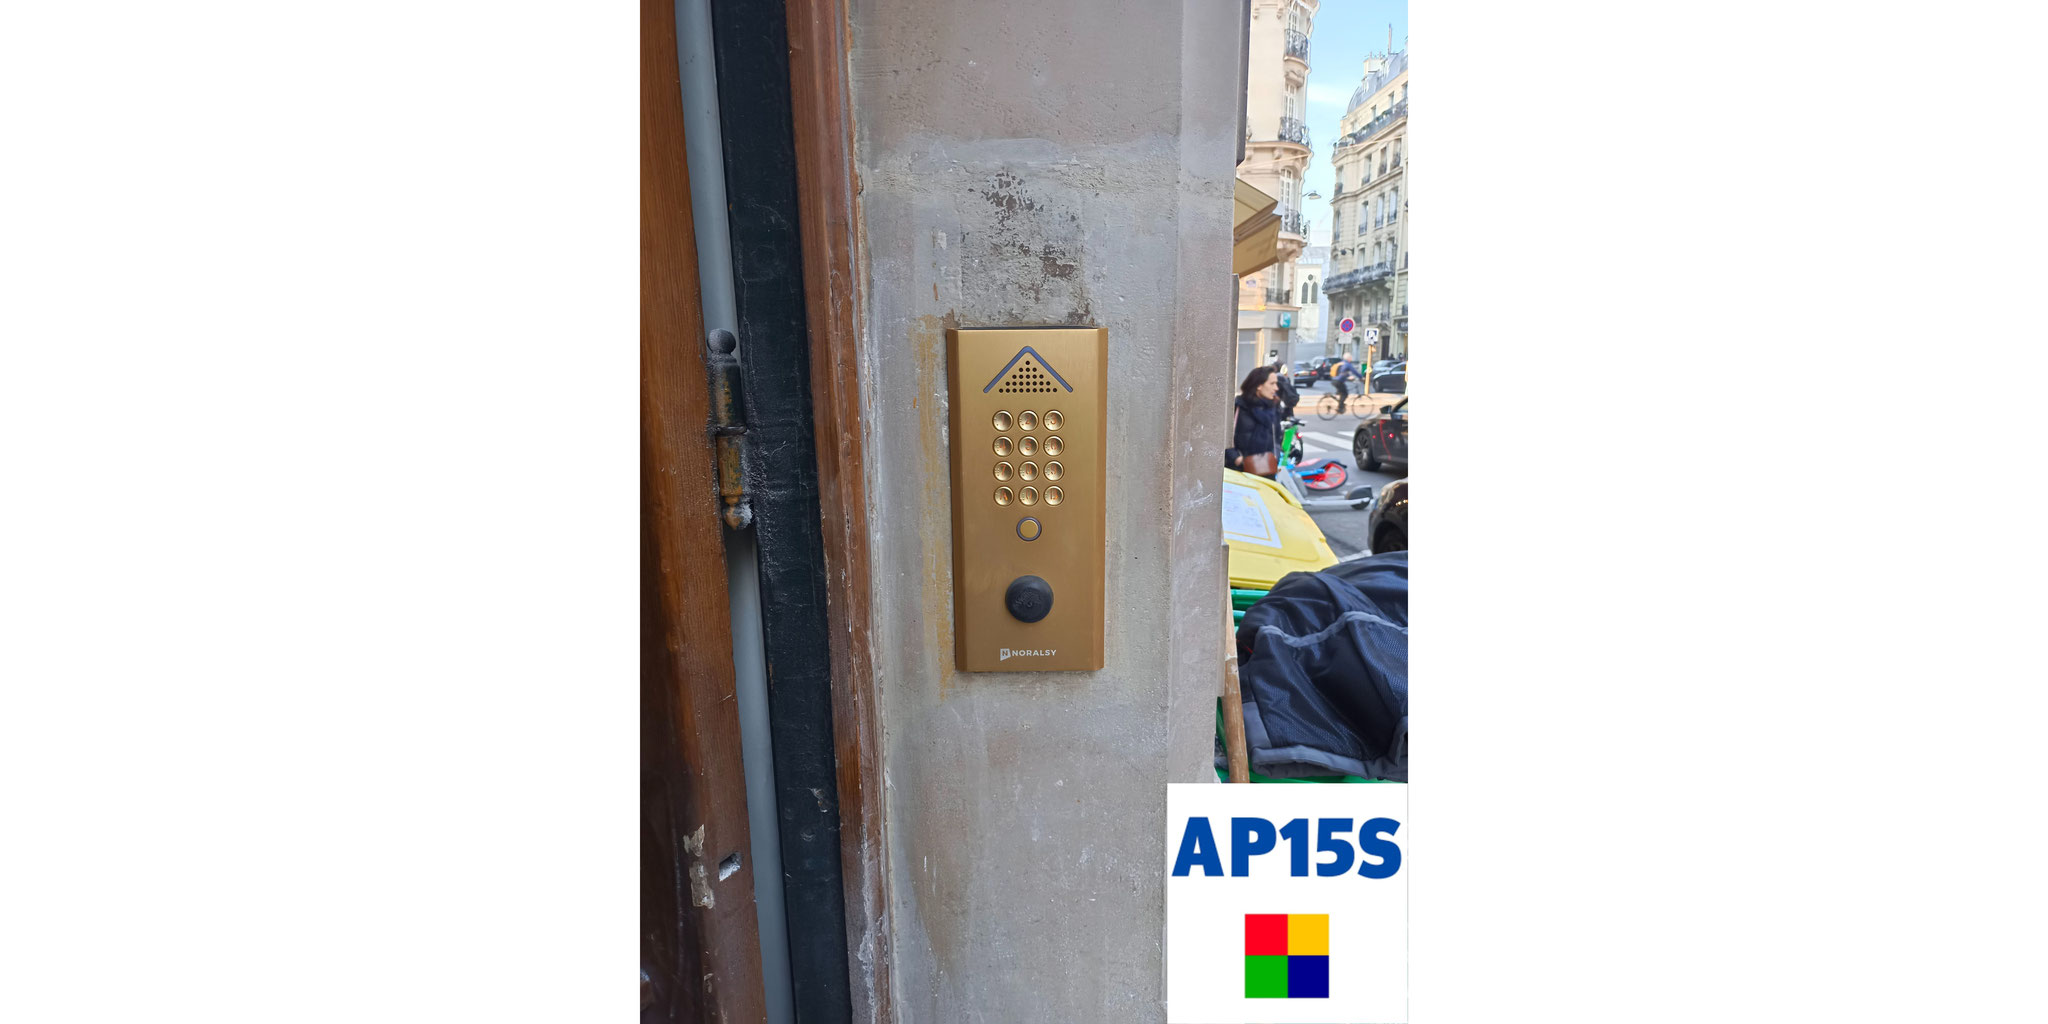 Clavier Portacode AP15S Paris